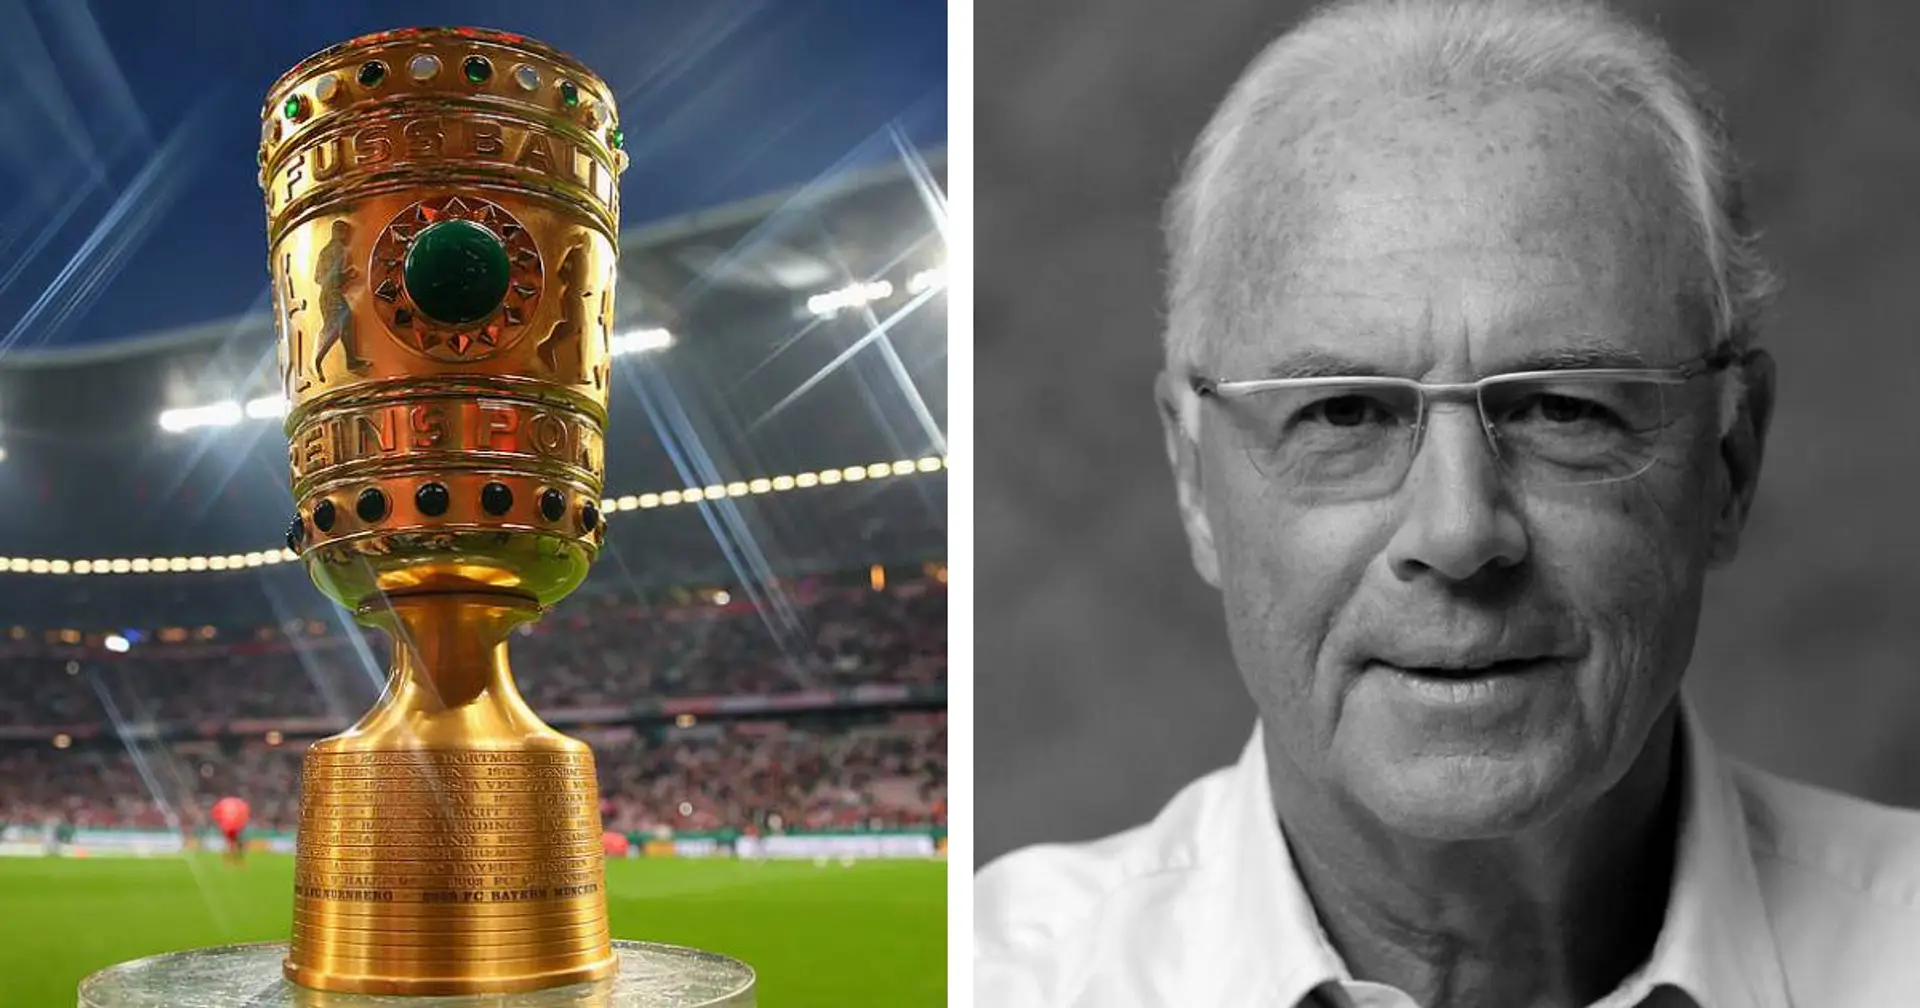 Benennung des DFB-Pokals nach Beckenbauer? Kohler: "Das würde ich zu 100 Prozent unterstützen"